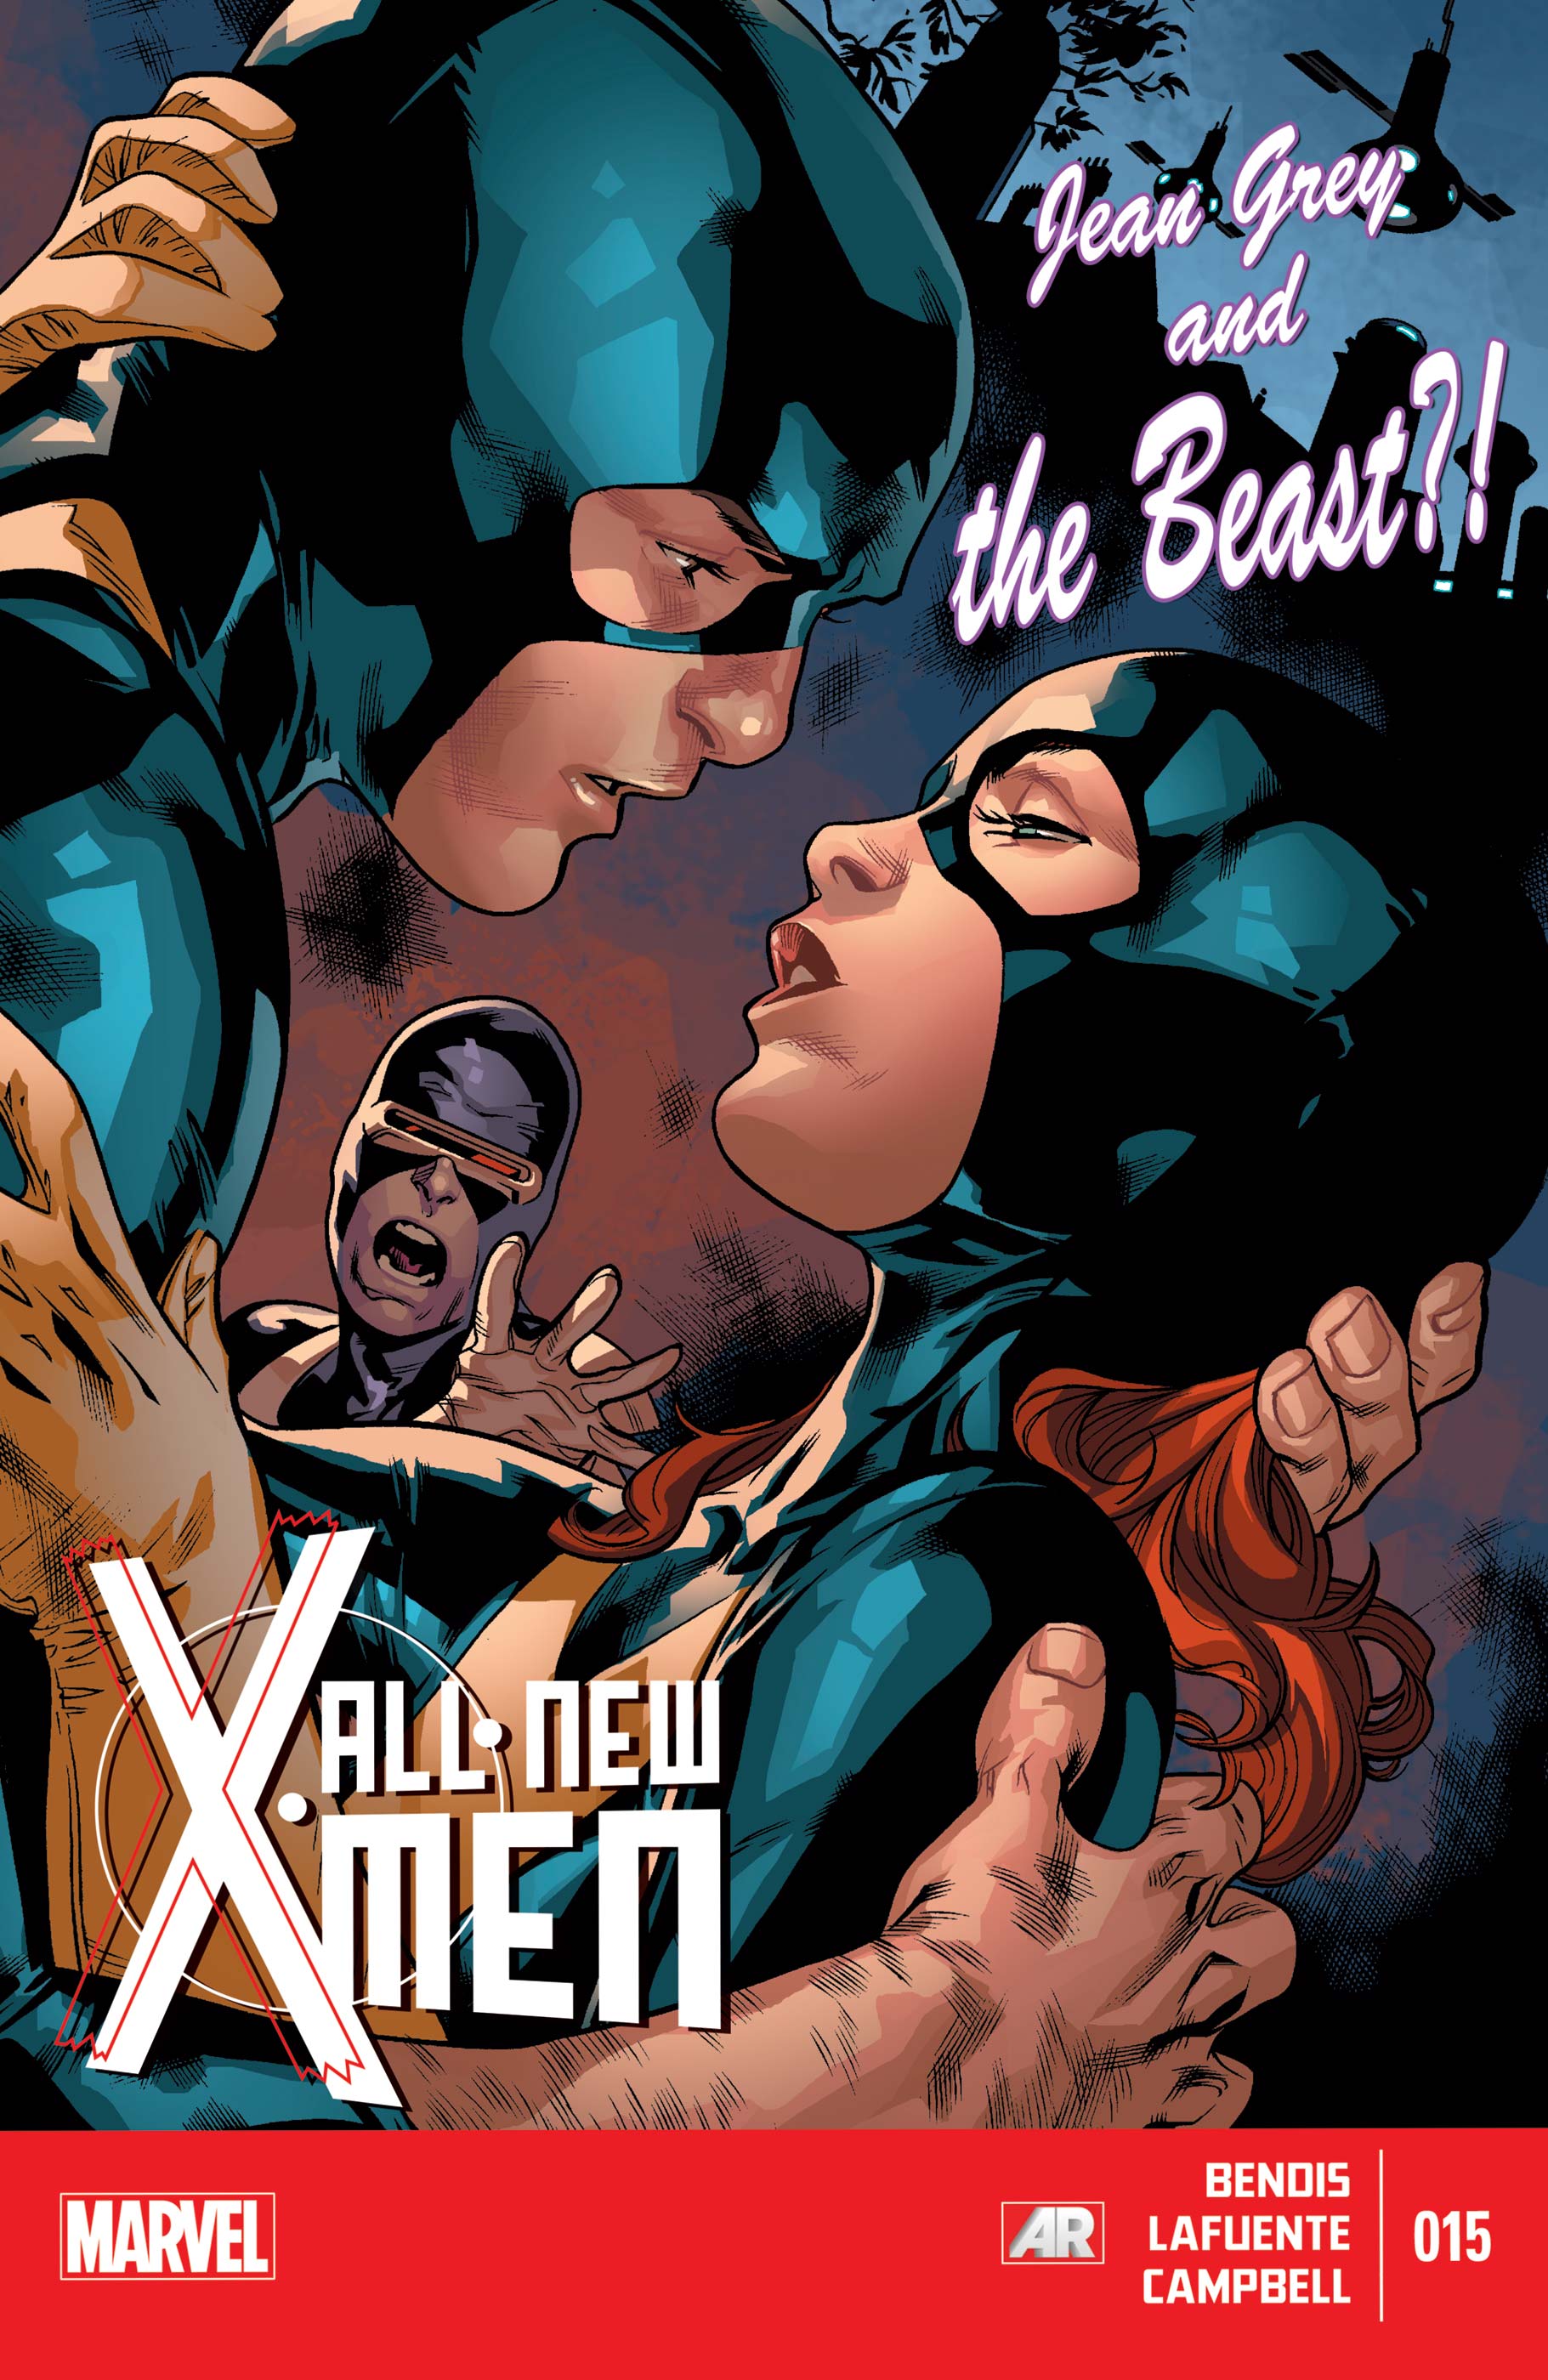 All-New X-Men (2012) #15